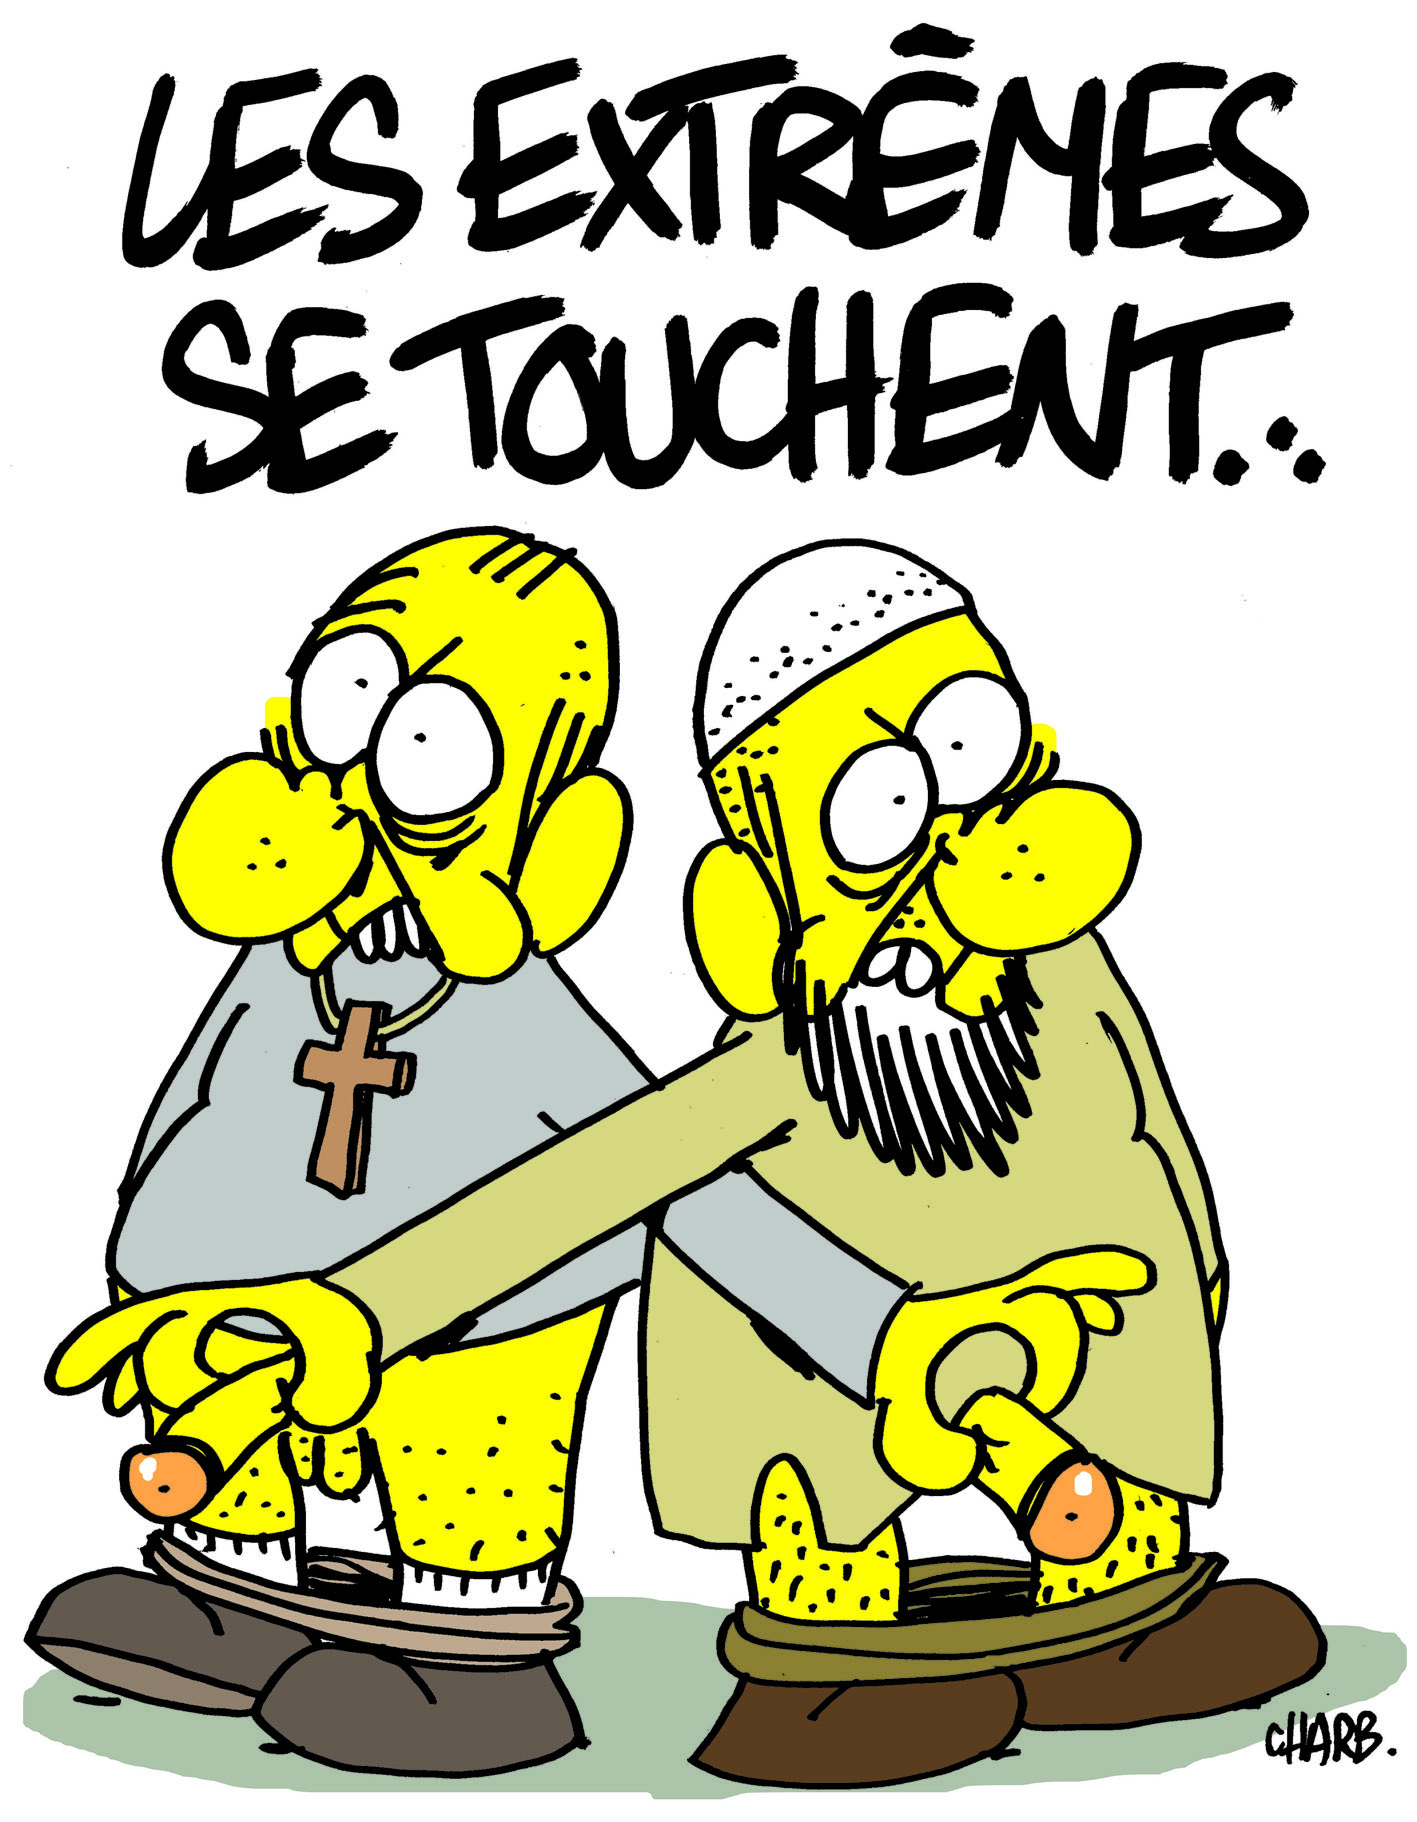 Les extrêmes se touchent, caricature de Charb